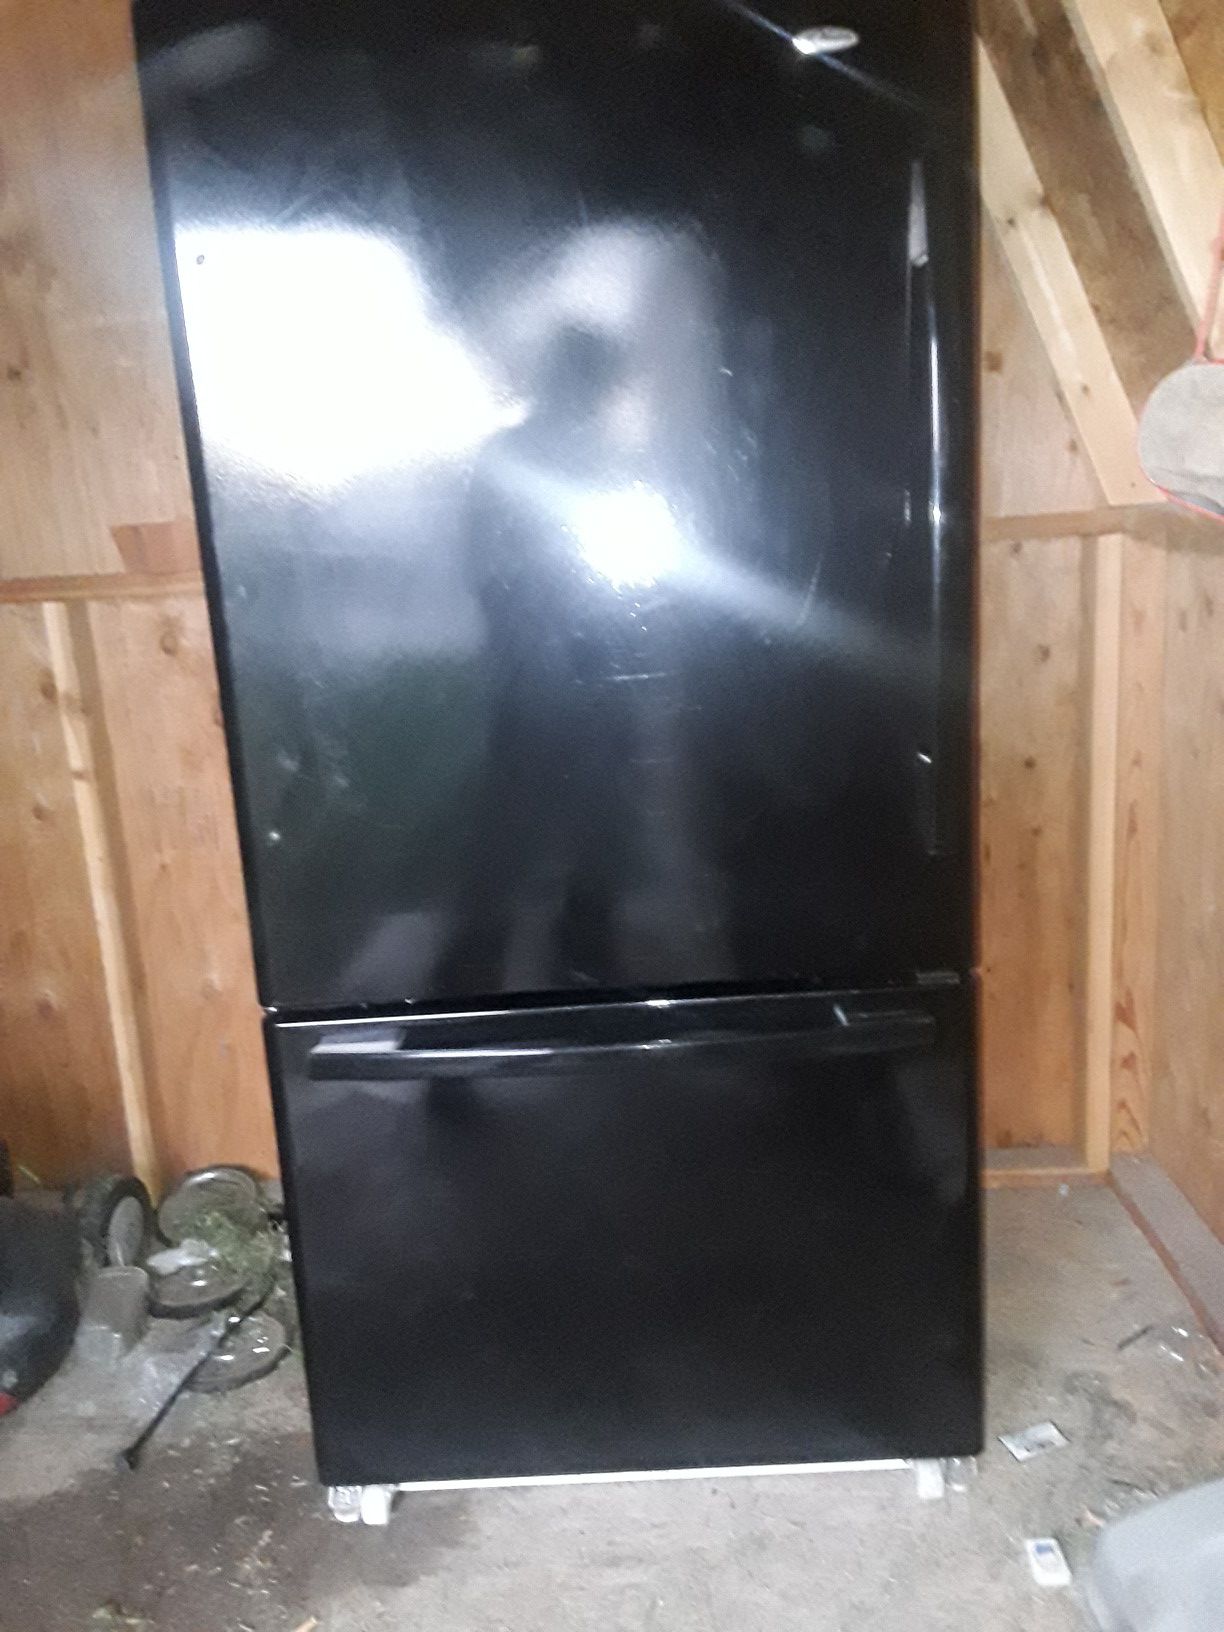 Amanda 22cu fridge/freezer